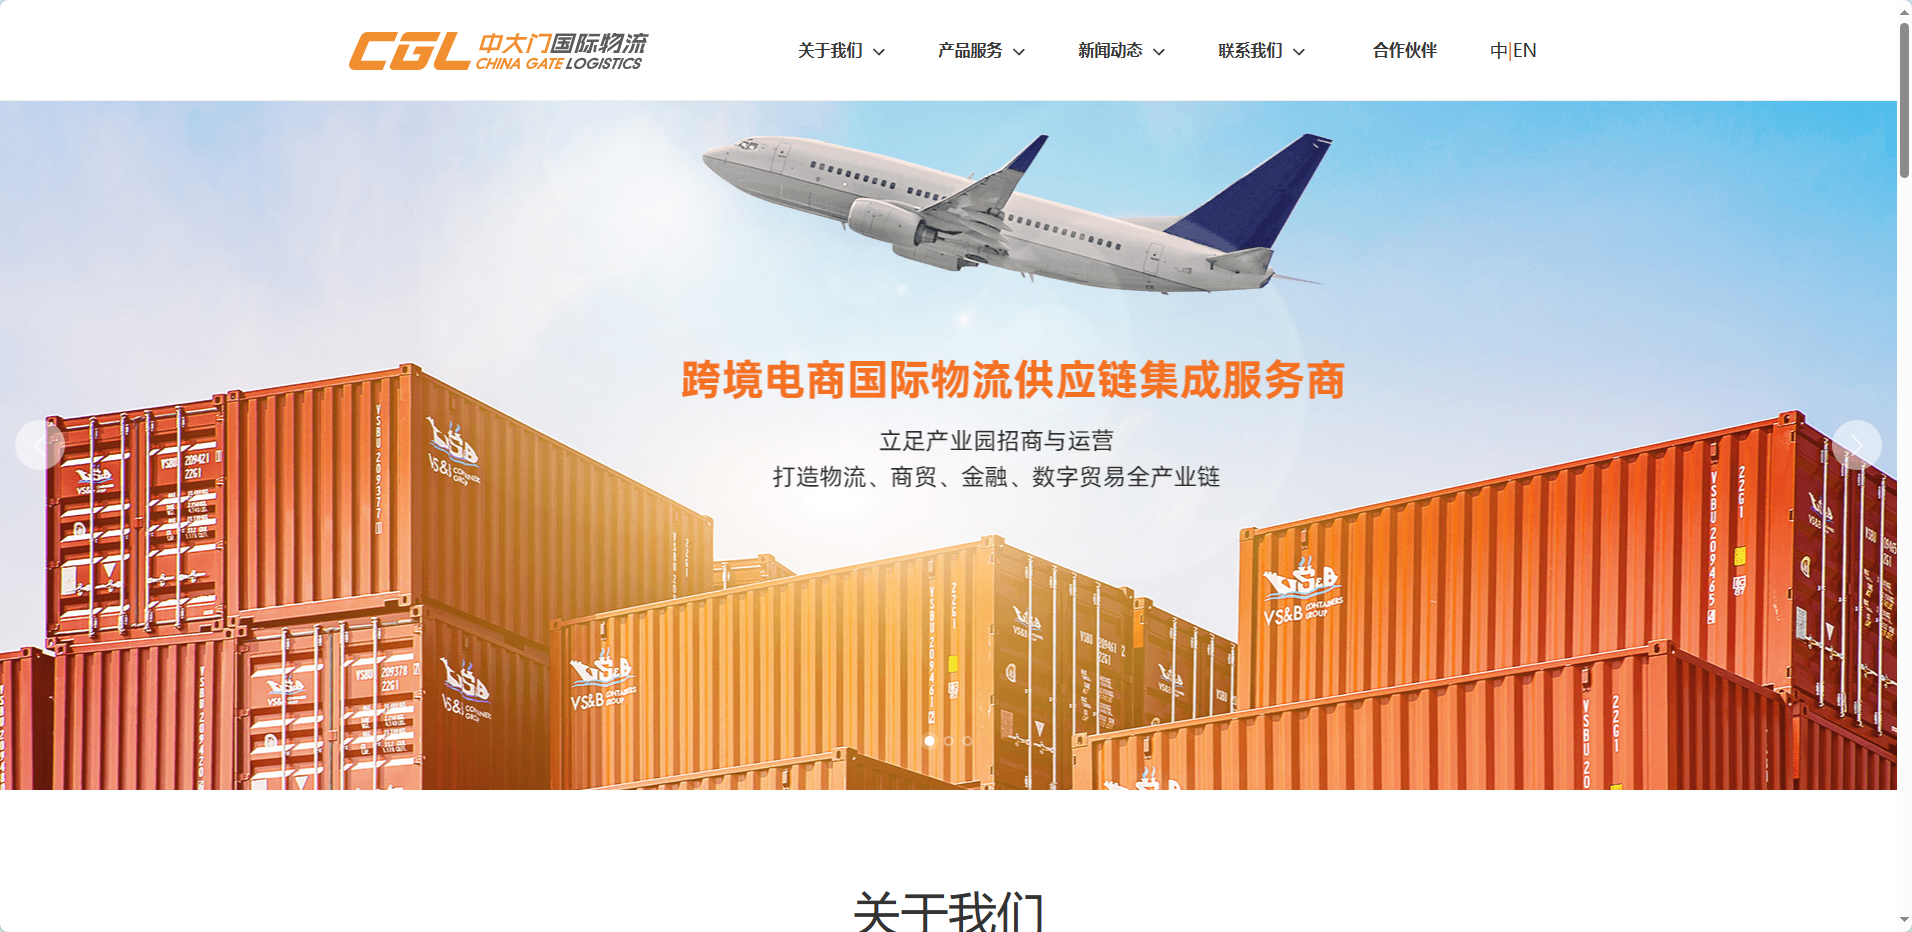 中大门国际物流(China Gate Logistics)